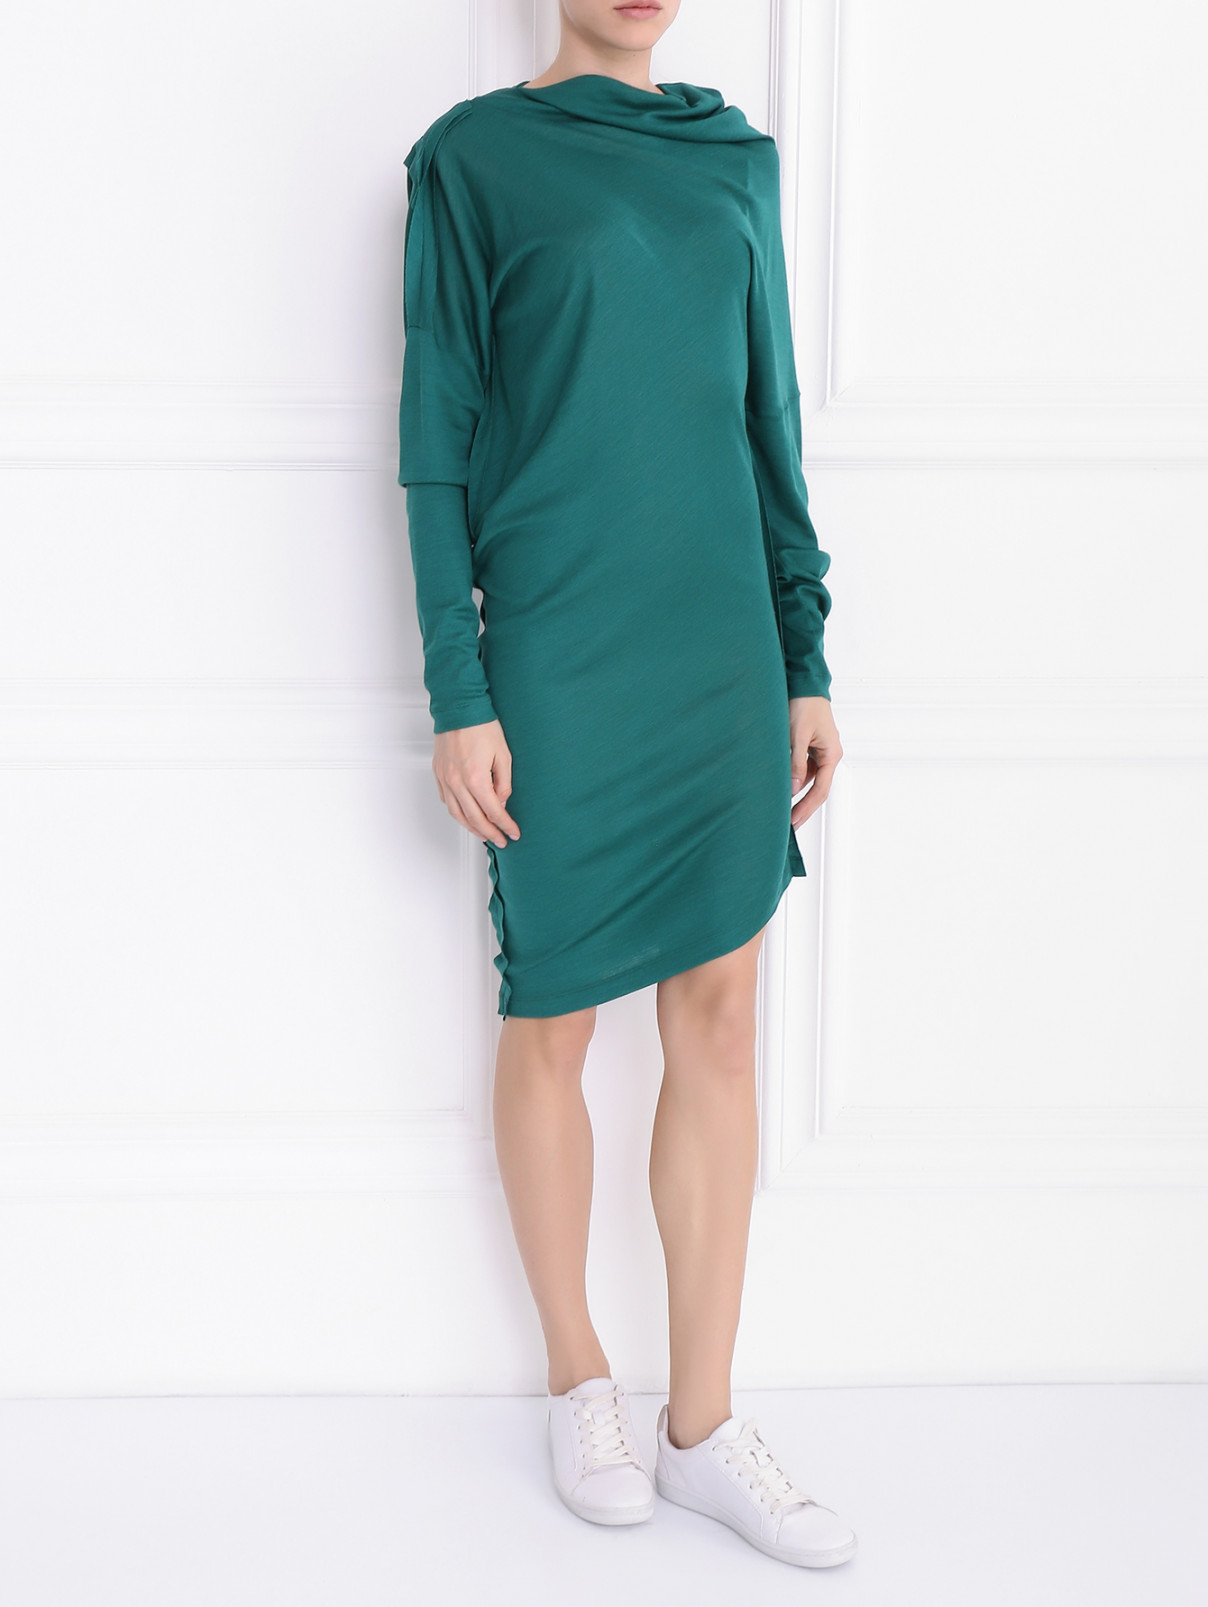 Асимметричное платье из шерсти и шелка с длинным рукавом Maison Margiela  –  Модель Общий вид  – Цвет:  Зеленый